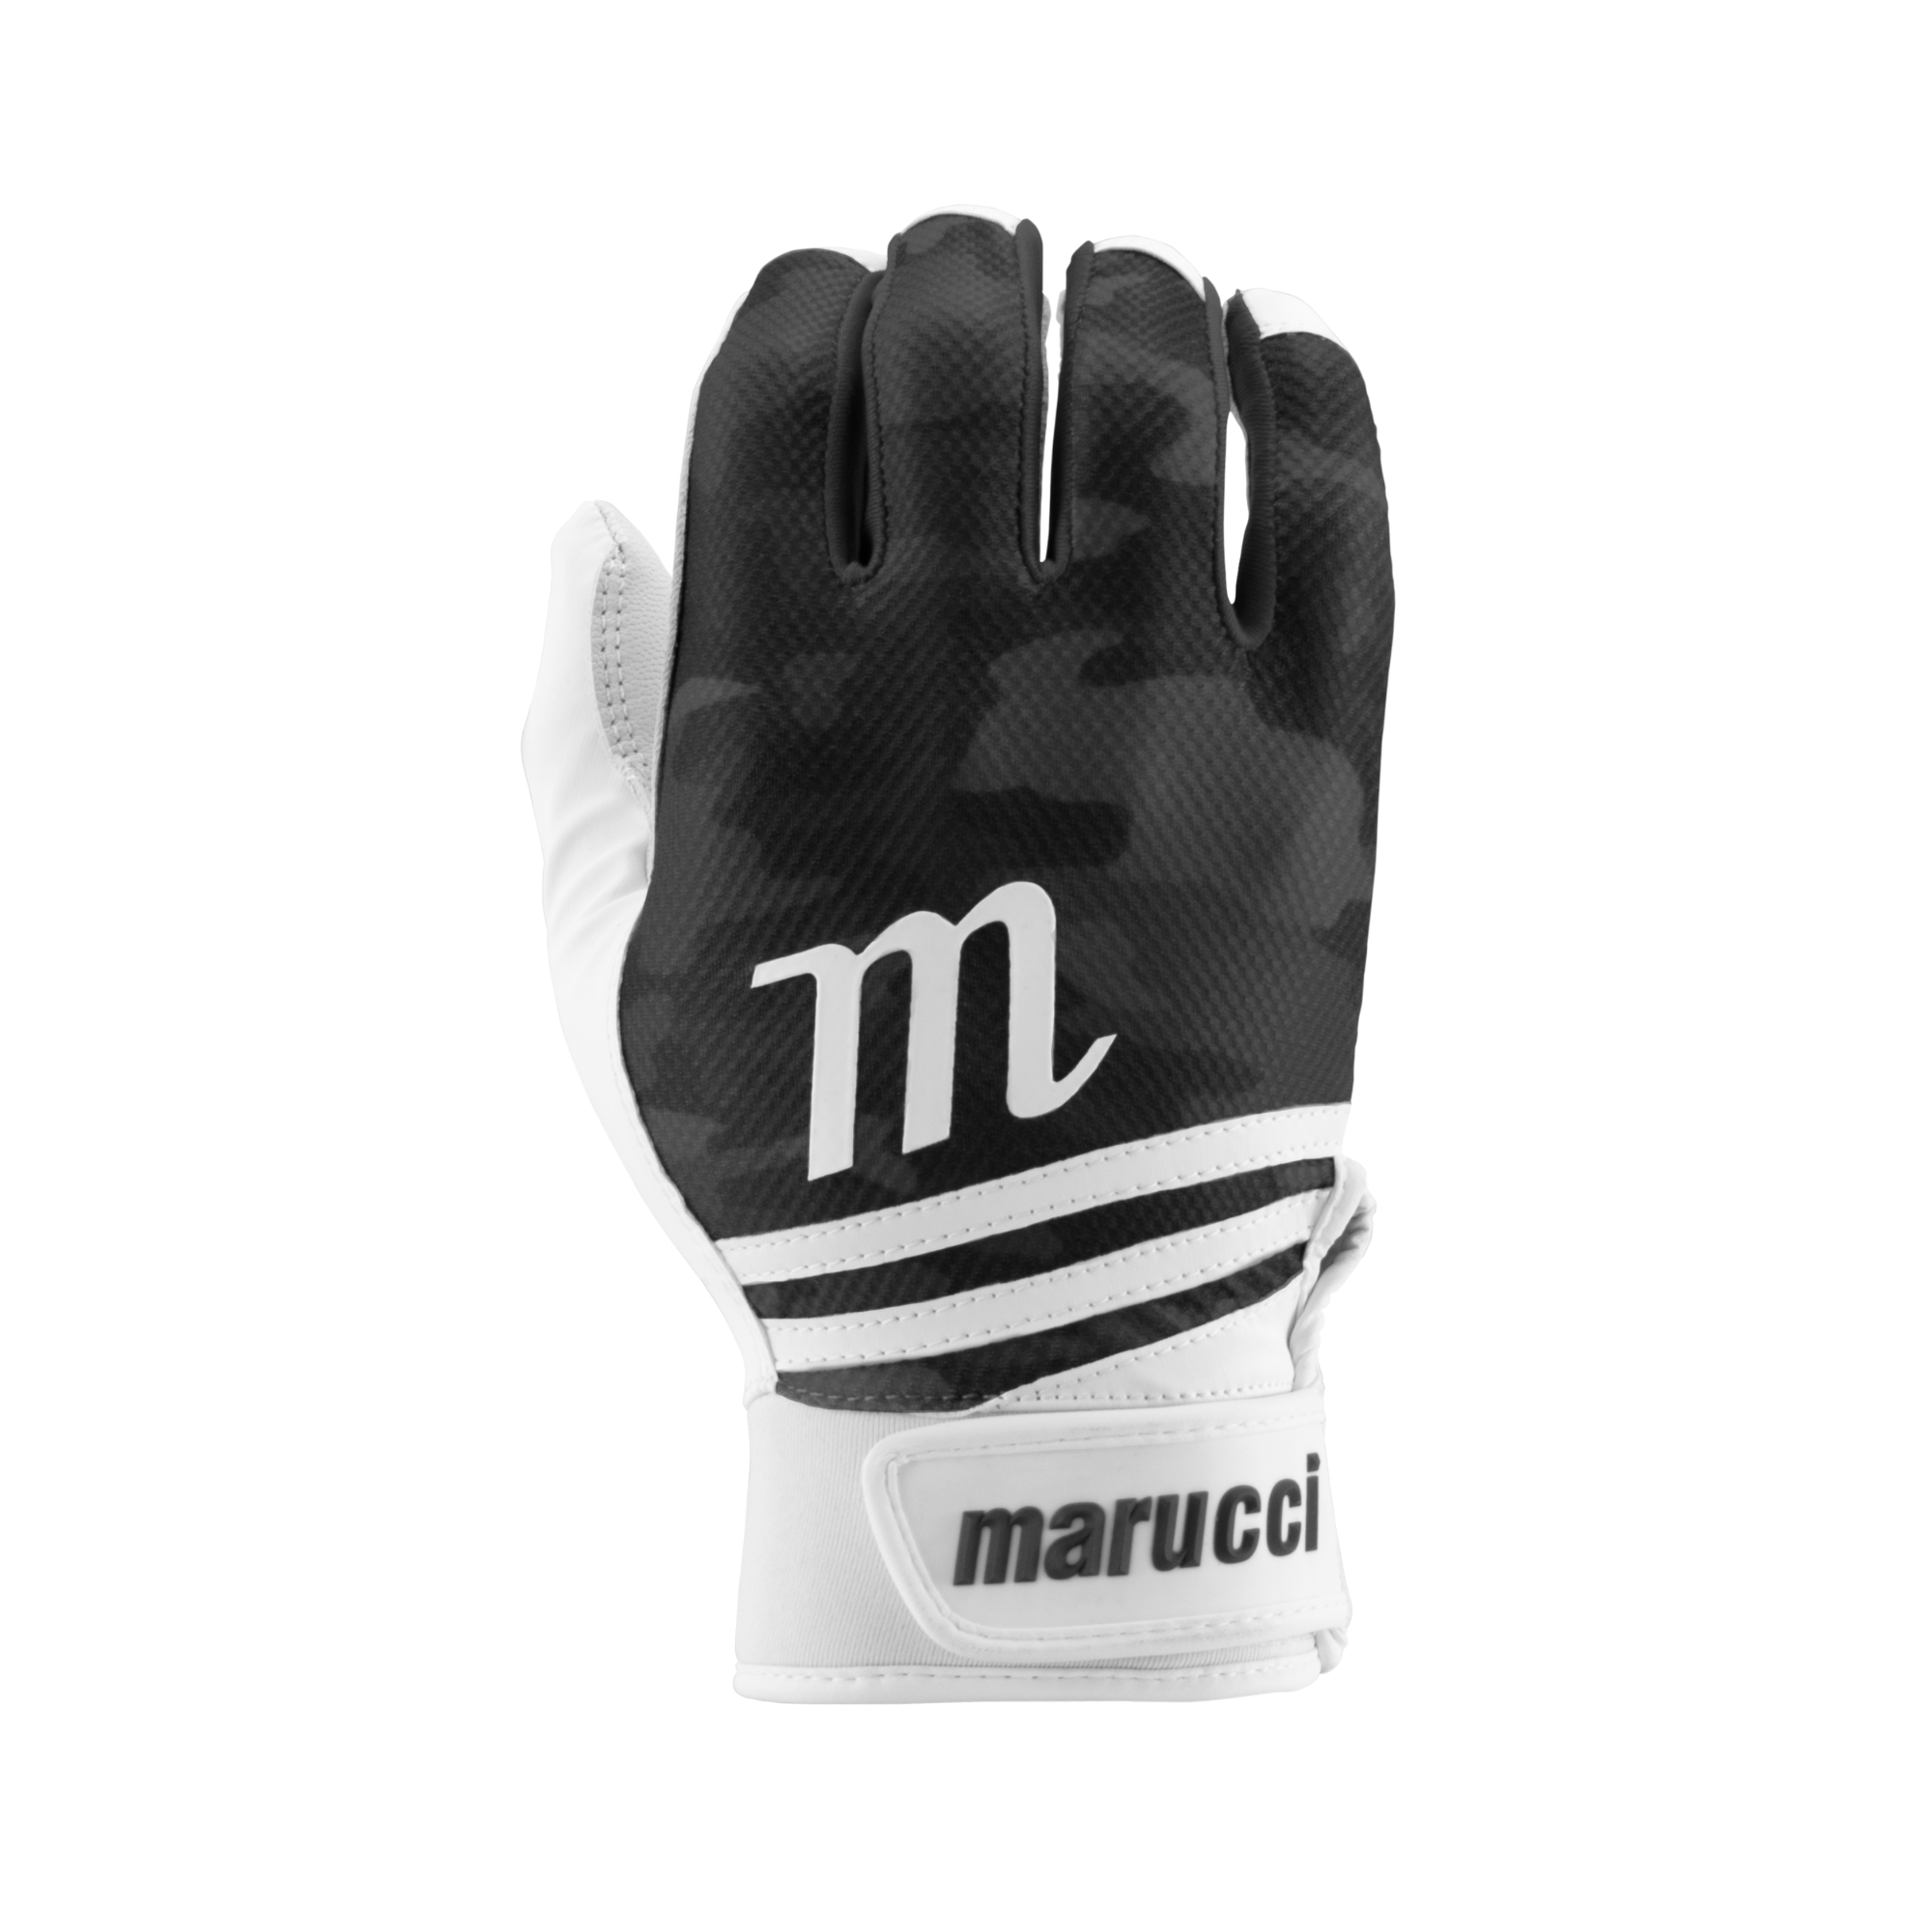 Marucci Crux Batting Gloves - Black